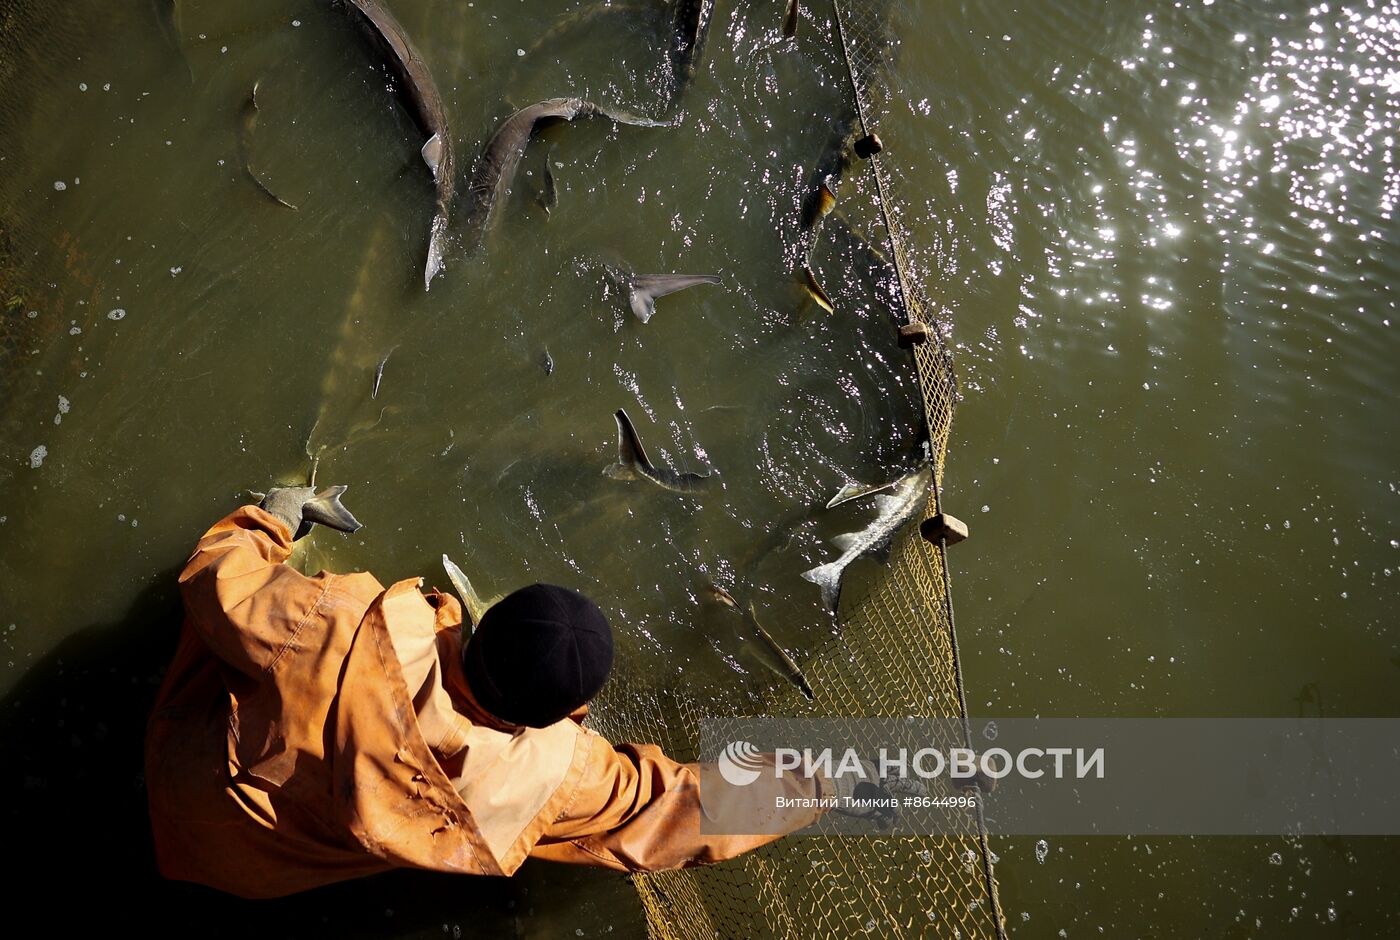 Производство рыбной продукции на Гривенском осетровом заводе в Краснодарском крае